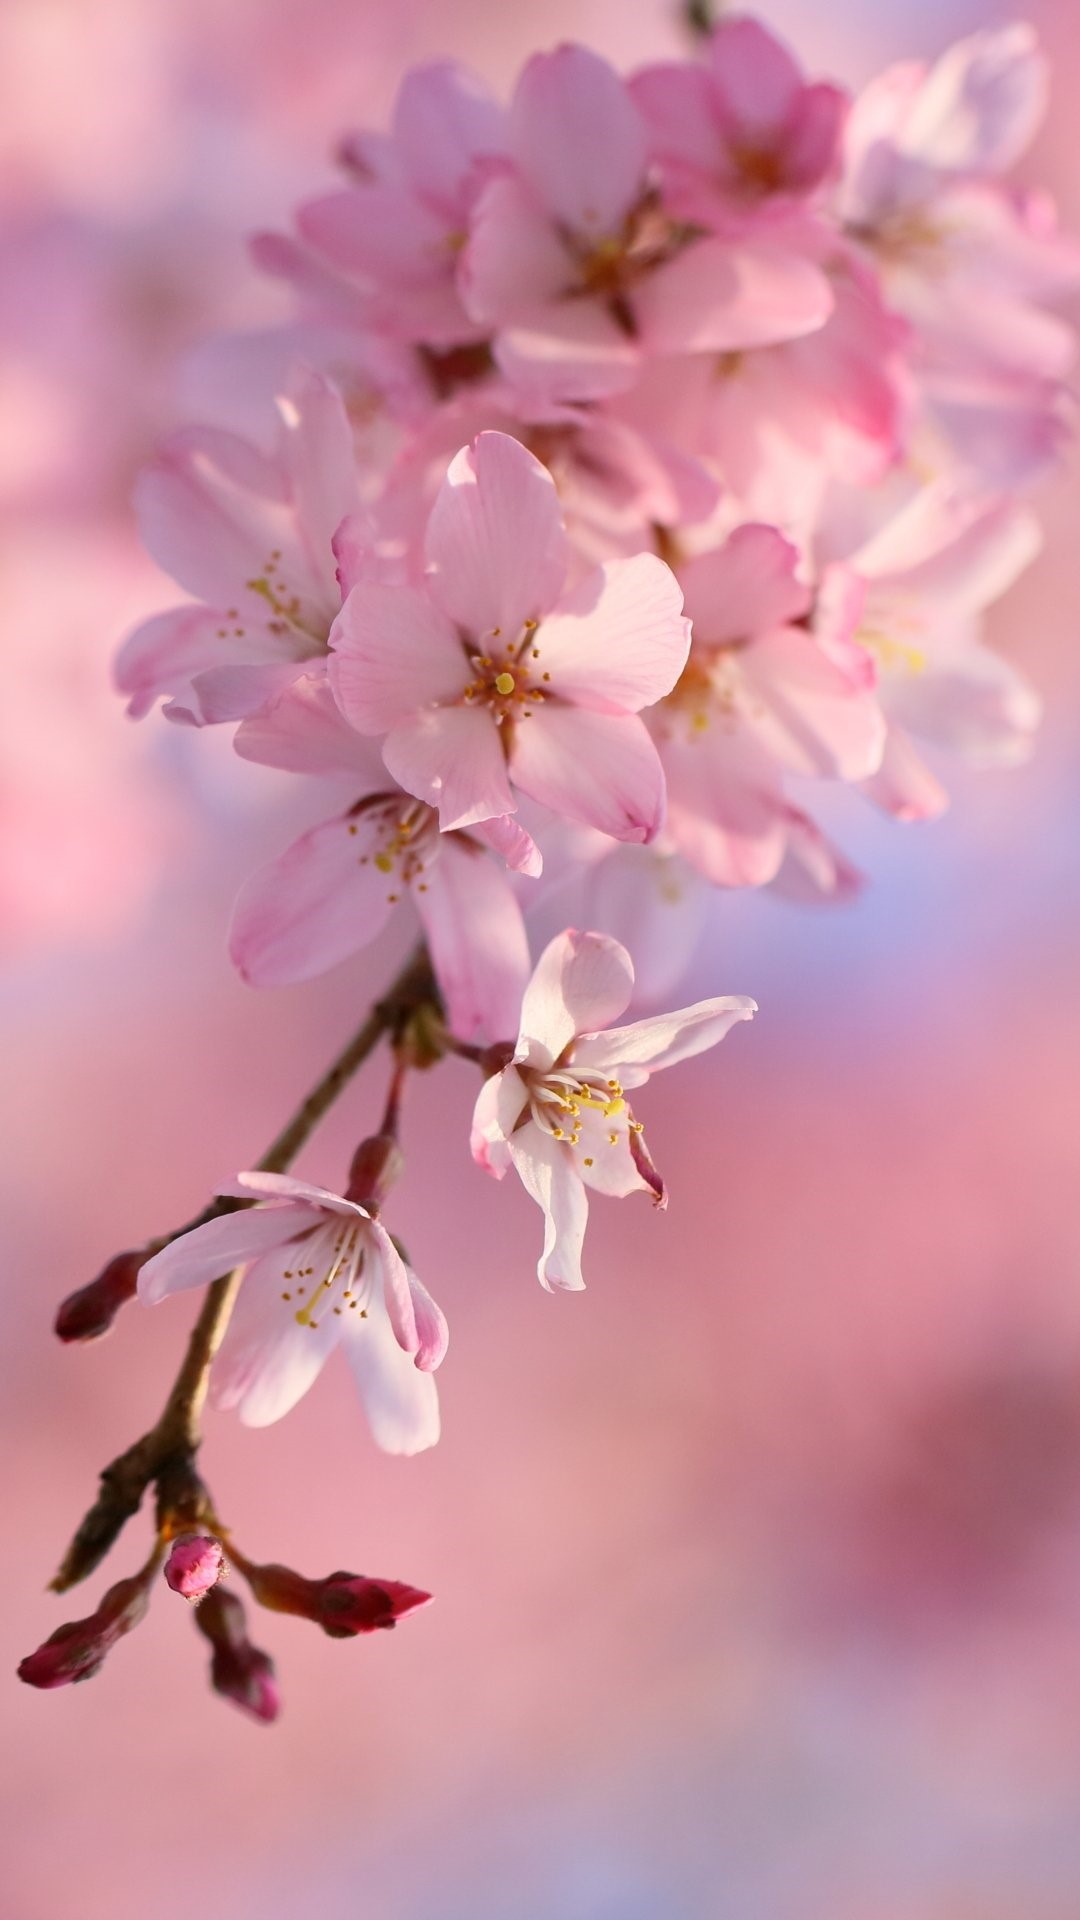 HOT] Top 77 hình nền hoa đào đẹp nhất cho năm mới may mắn | Ảnh Cười Việt